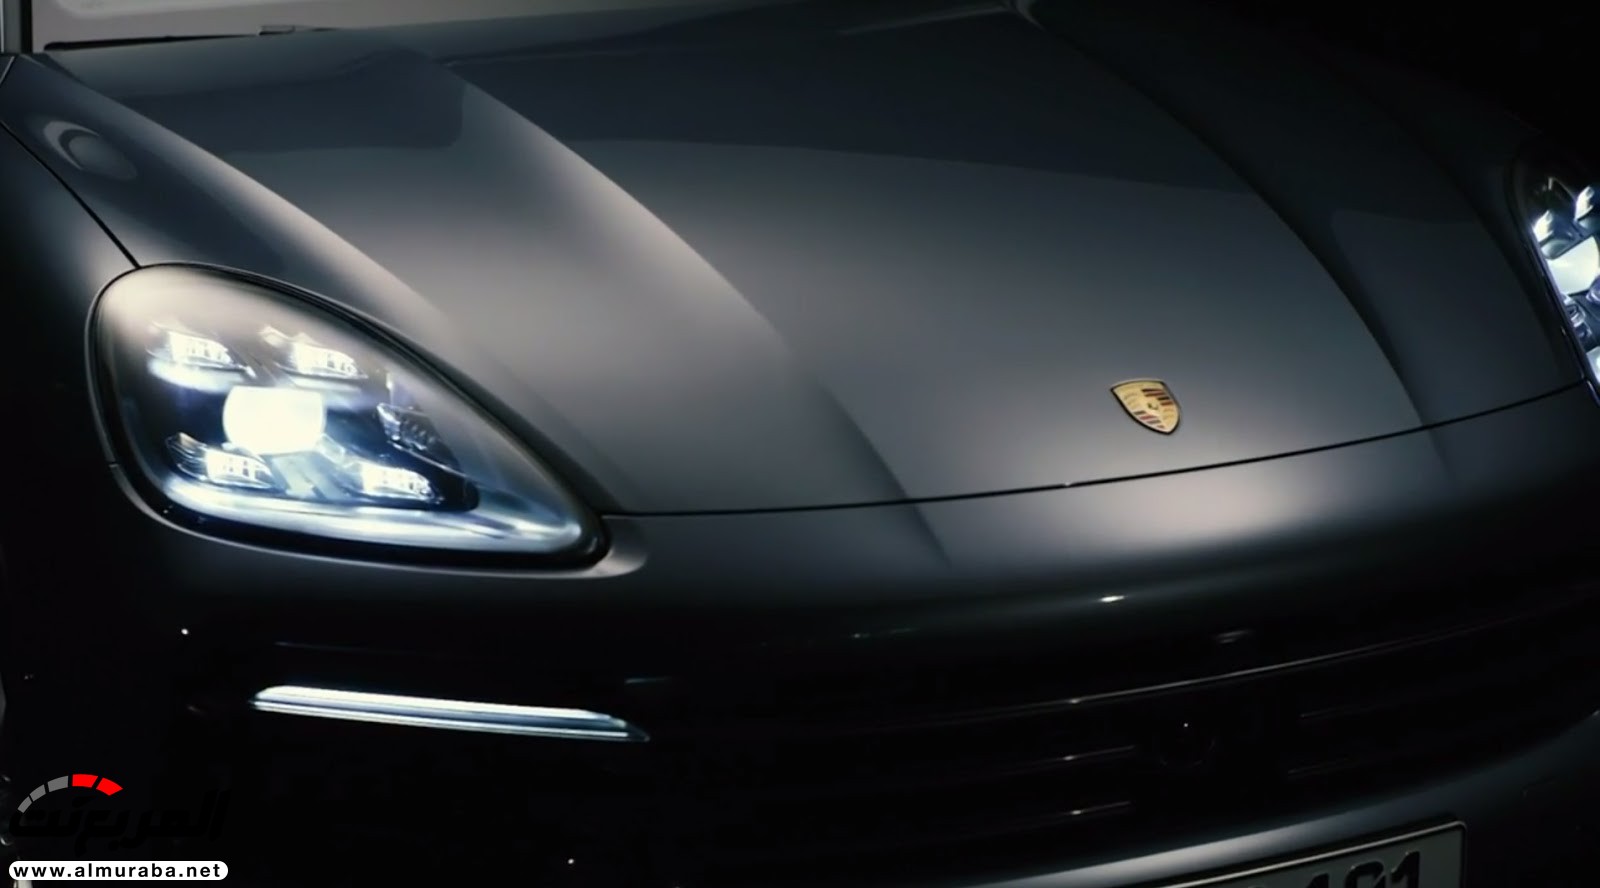 بورش كايين 2018 الشكل الجديد "تقرير ومواصفات والأسعار الرسمية في السعودية" Porsche Cayenne 54